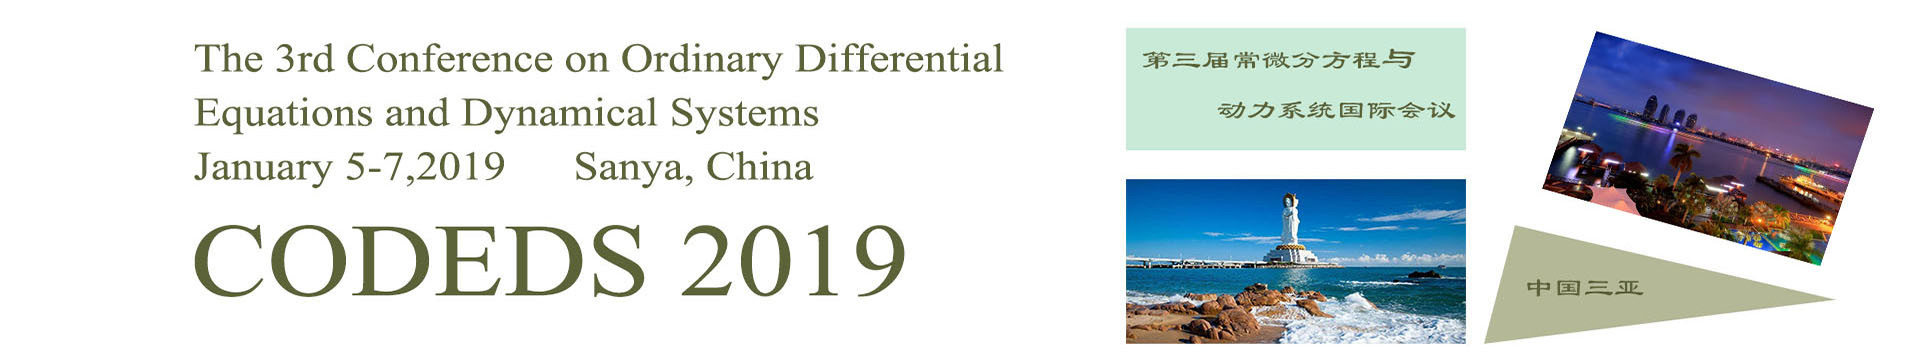 2019第二届常微分方程与动力系统国际会议(CODEDS 2019)